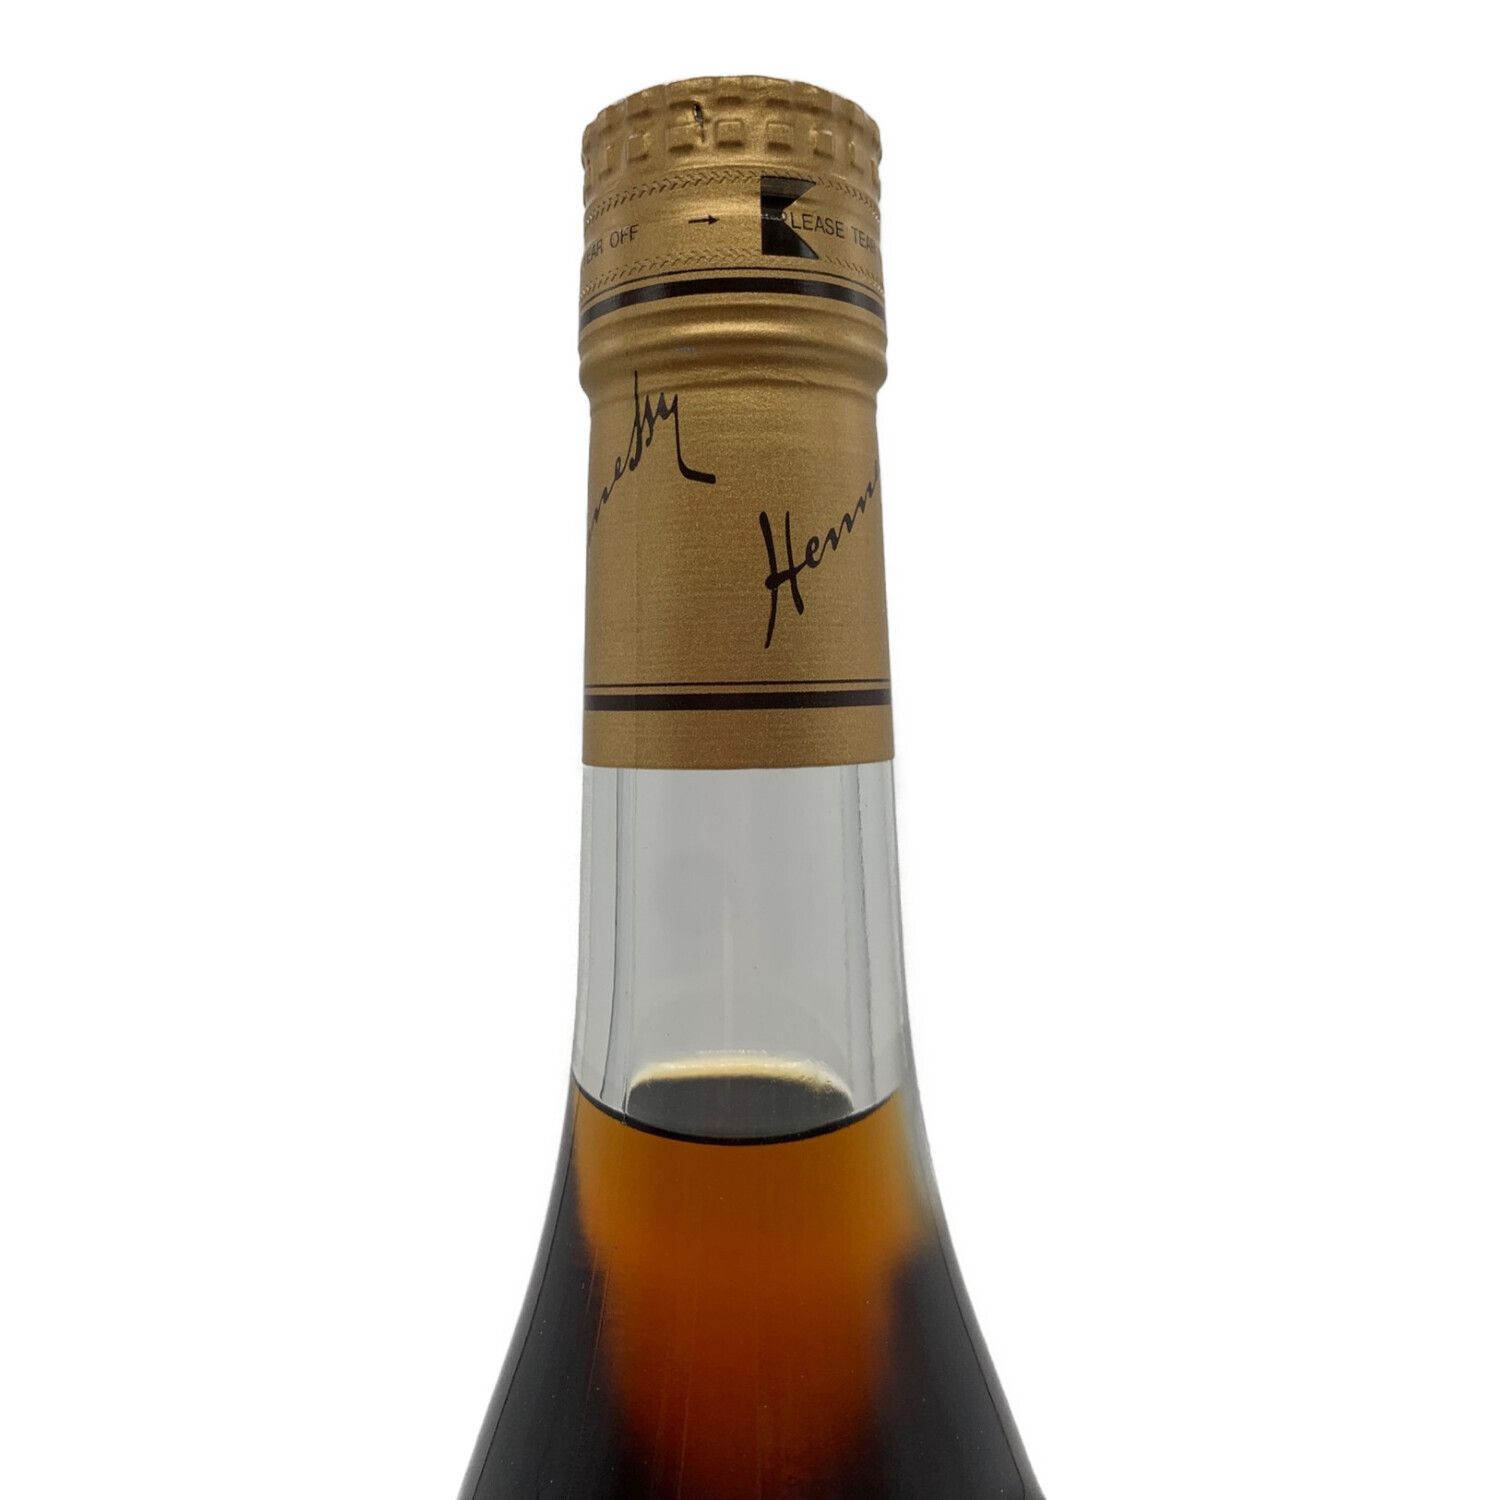 ヘネシー (Hennessy) ブランデー フィーヌ・シャンパーニュ 700ml 箱付